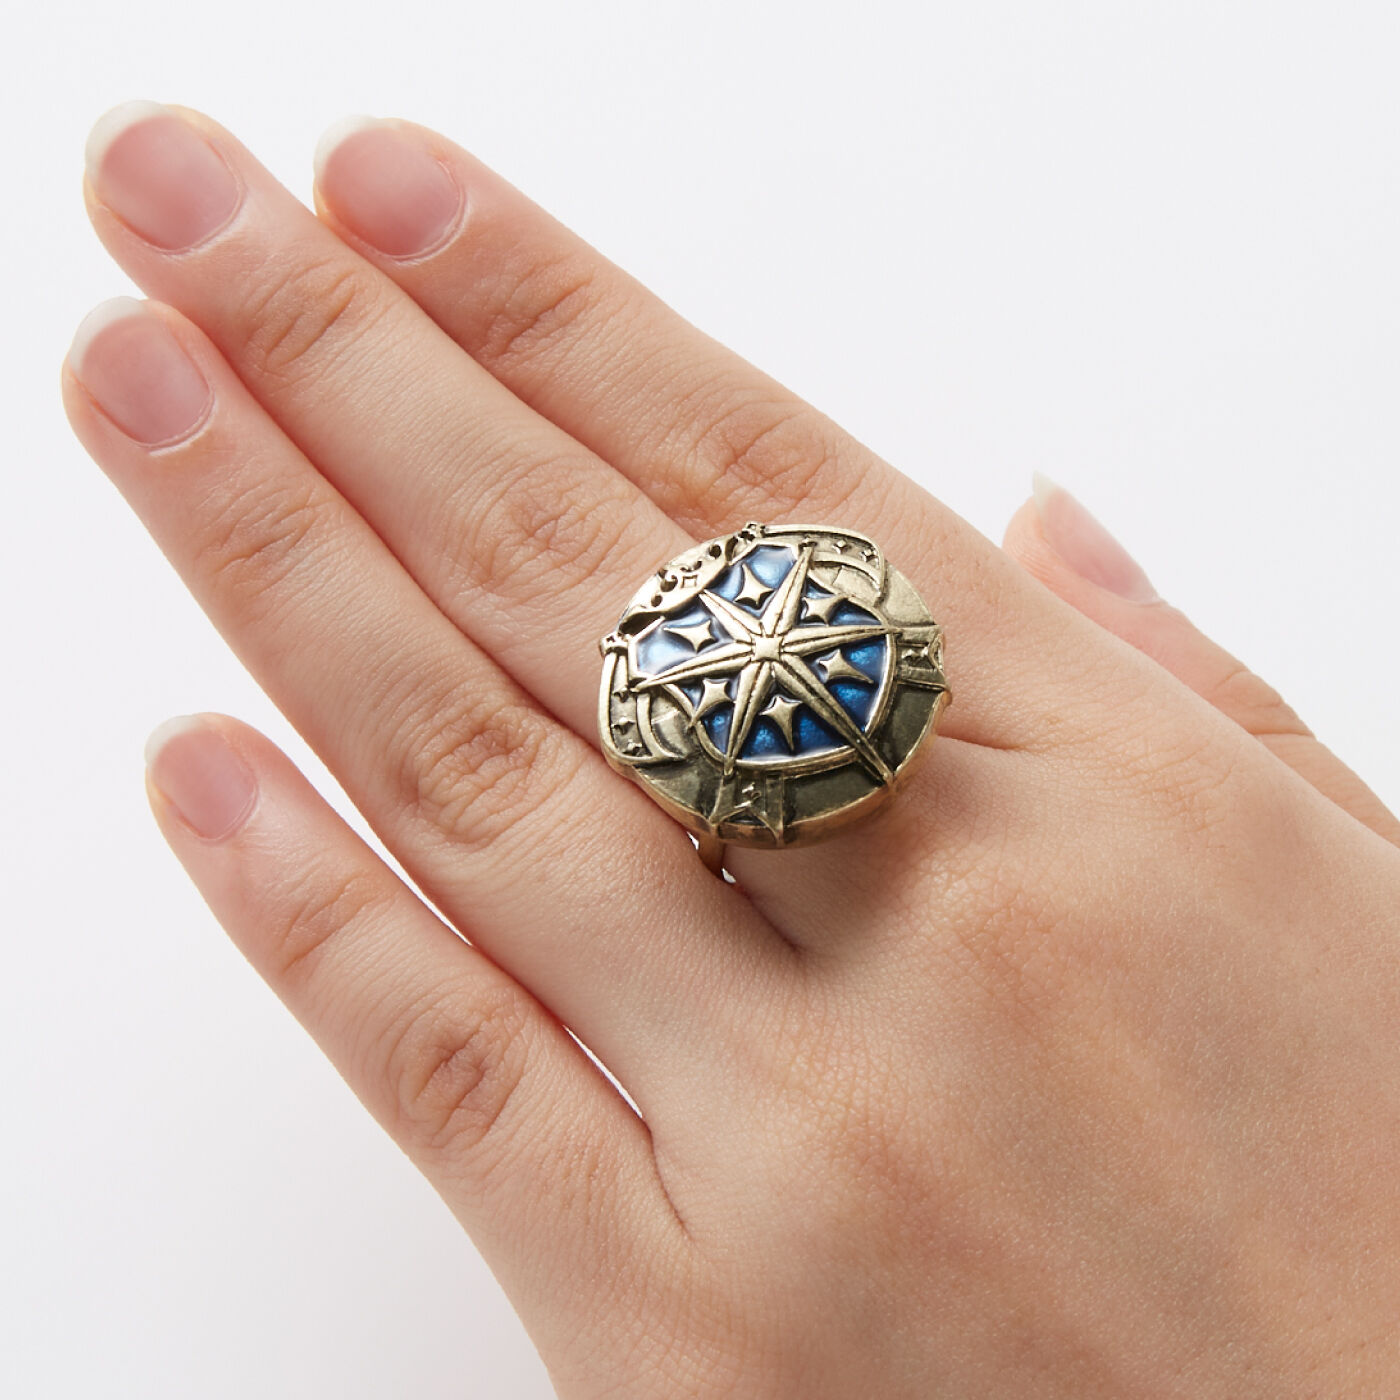 魔法部|魔法部×魔法使いの約束　国章ボタンカバー〈東の国〉|指輪に付ければ、存在感のある大きめのモチーフリング風に。※指輪の形状によっては付けられない場合があります。※お届けする柄とは異なります。